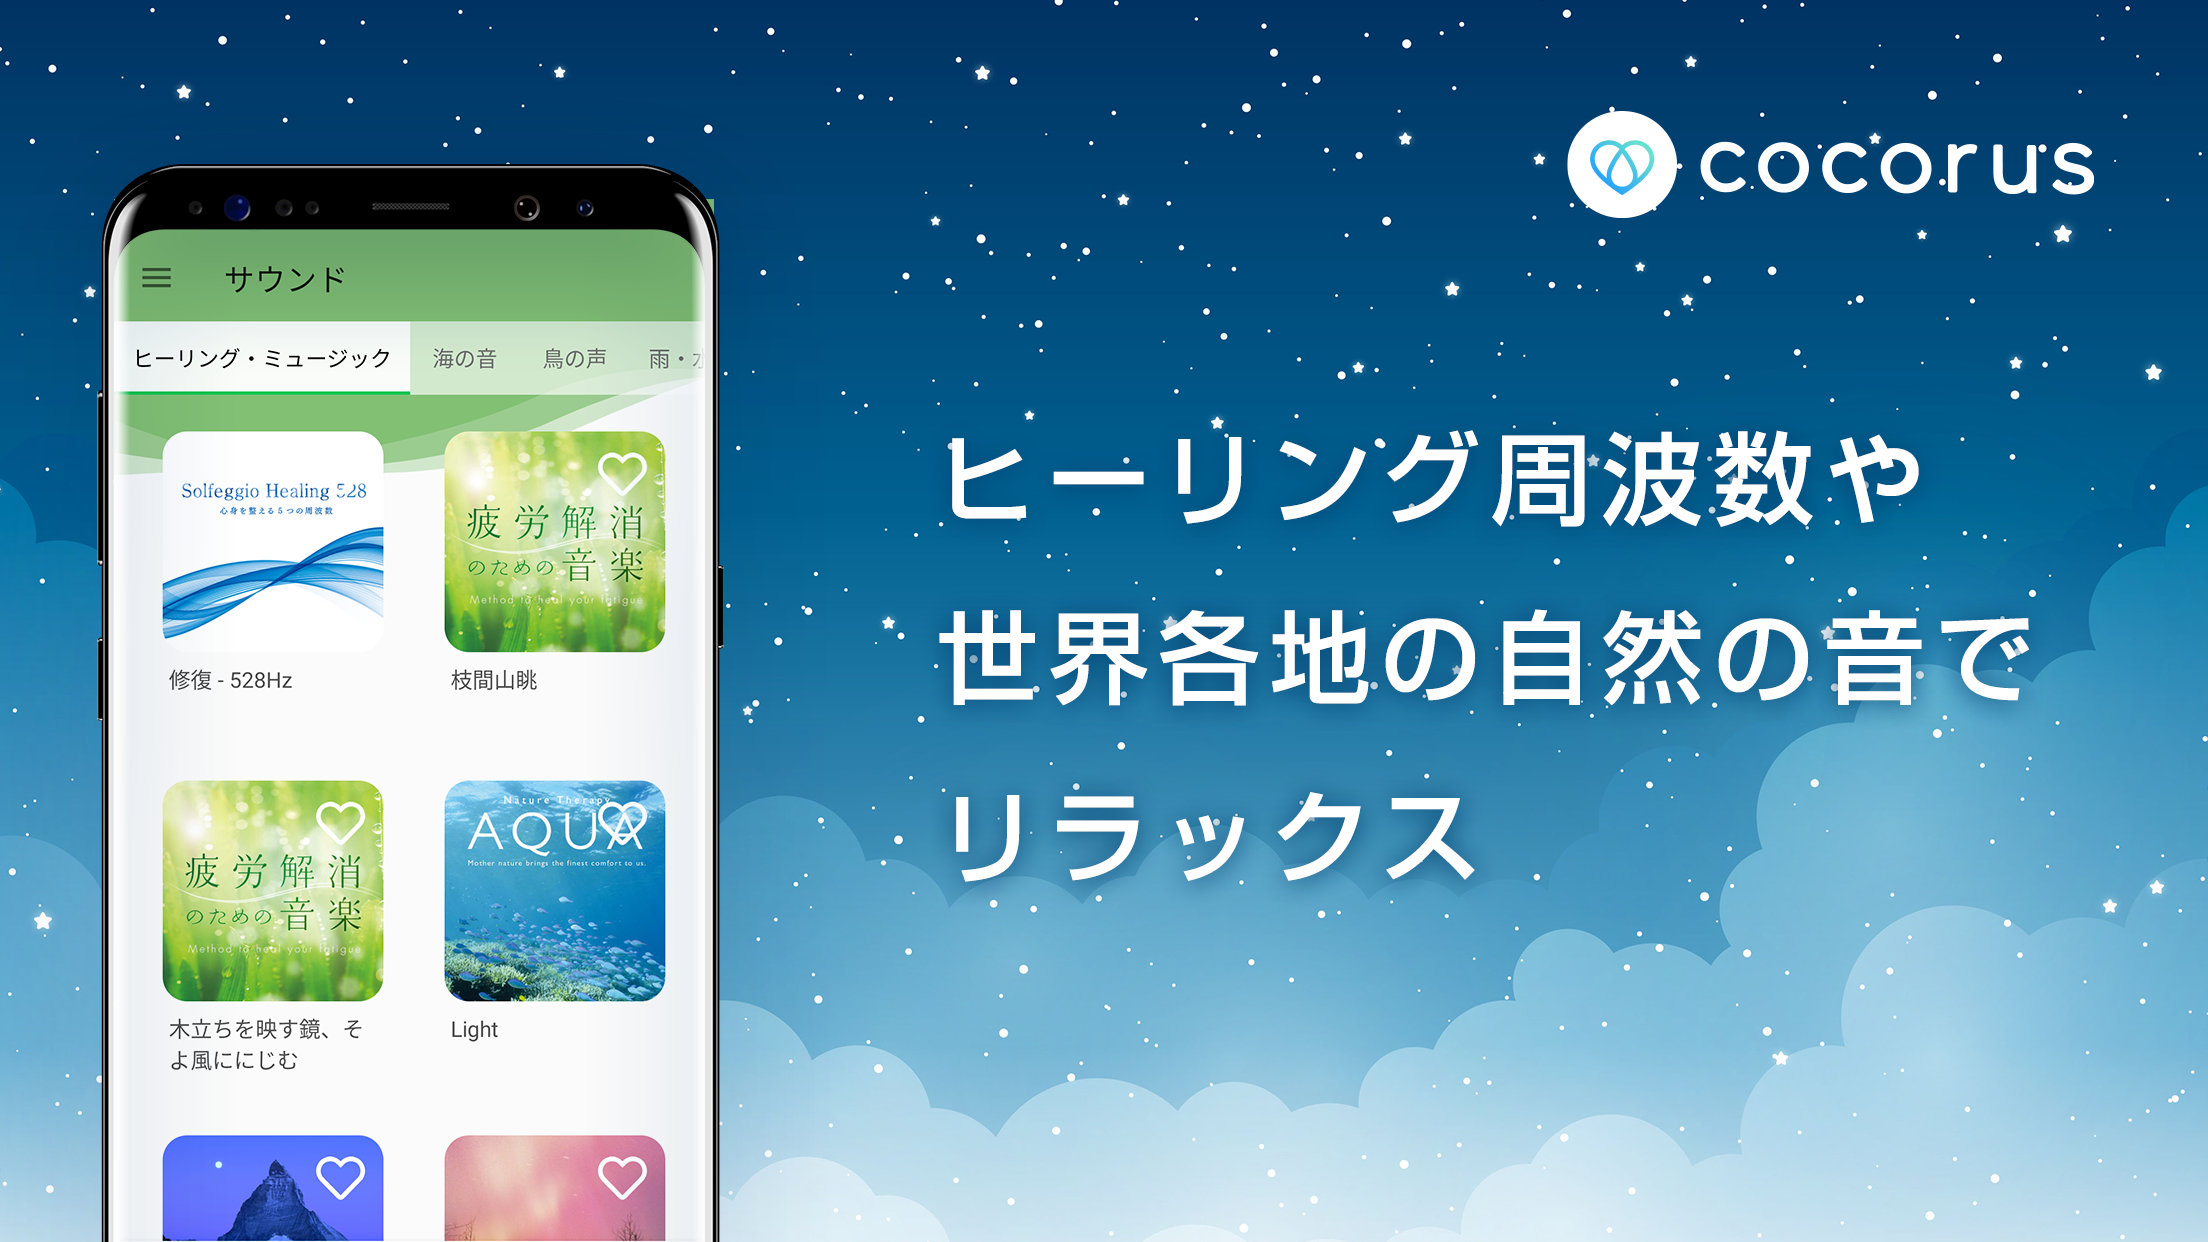 Android application cocorus-マインドフルネス瞑想/睡眠/ASMR/自然音アプリ screenshort